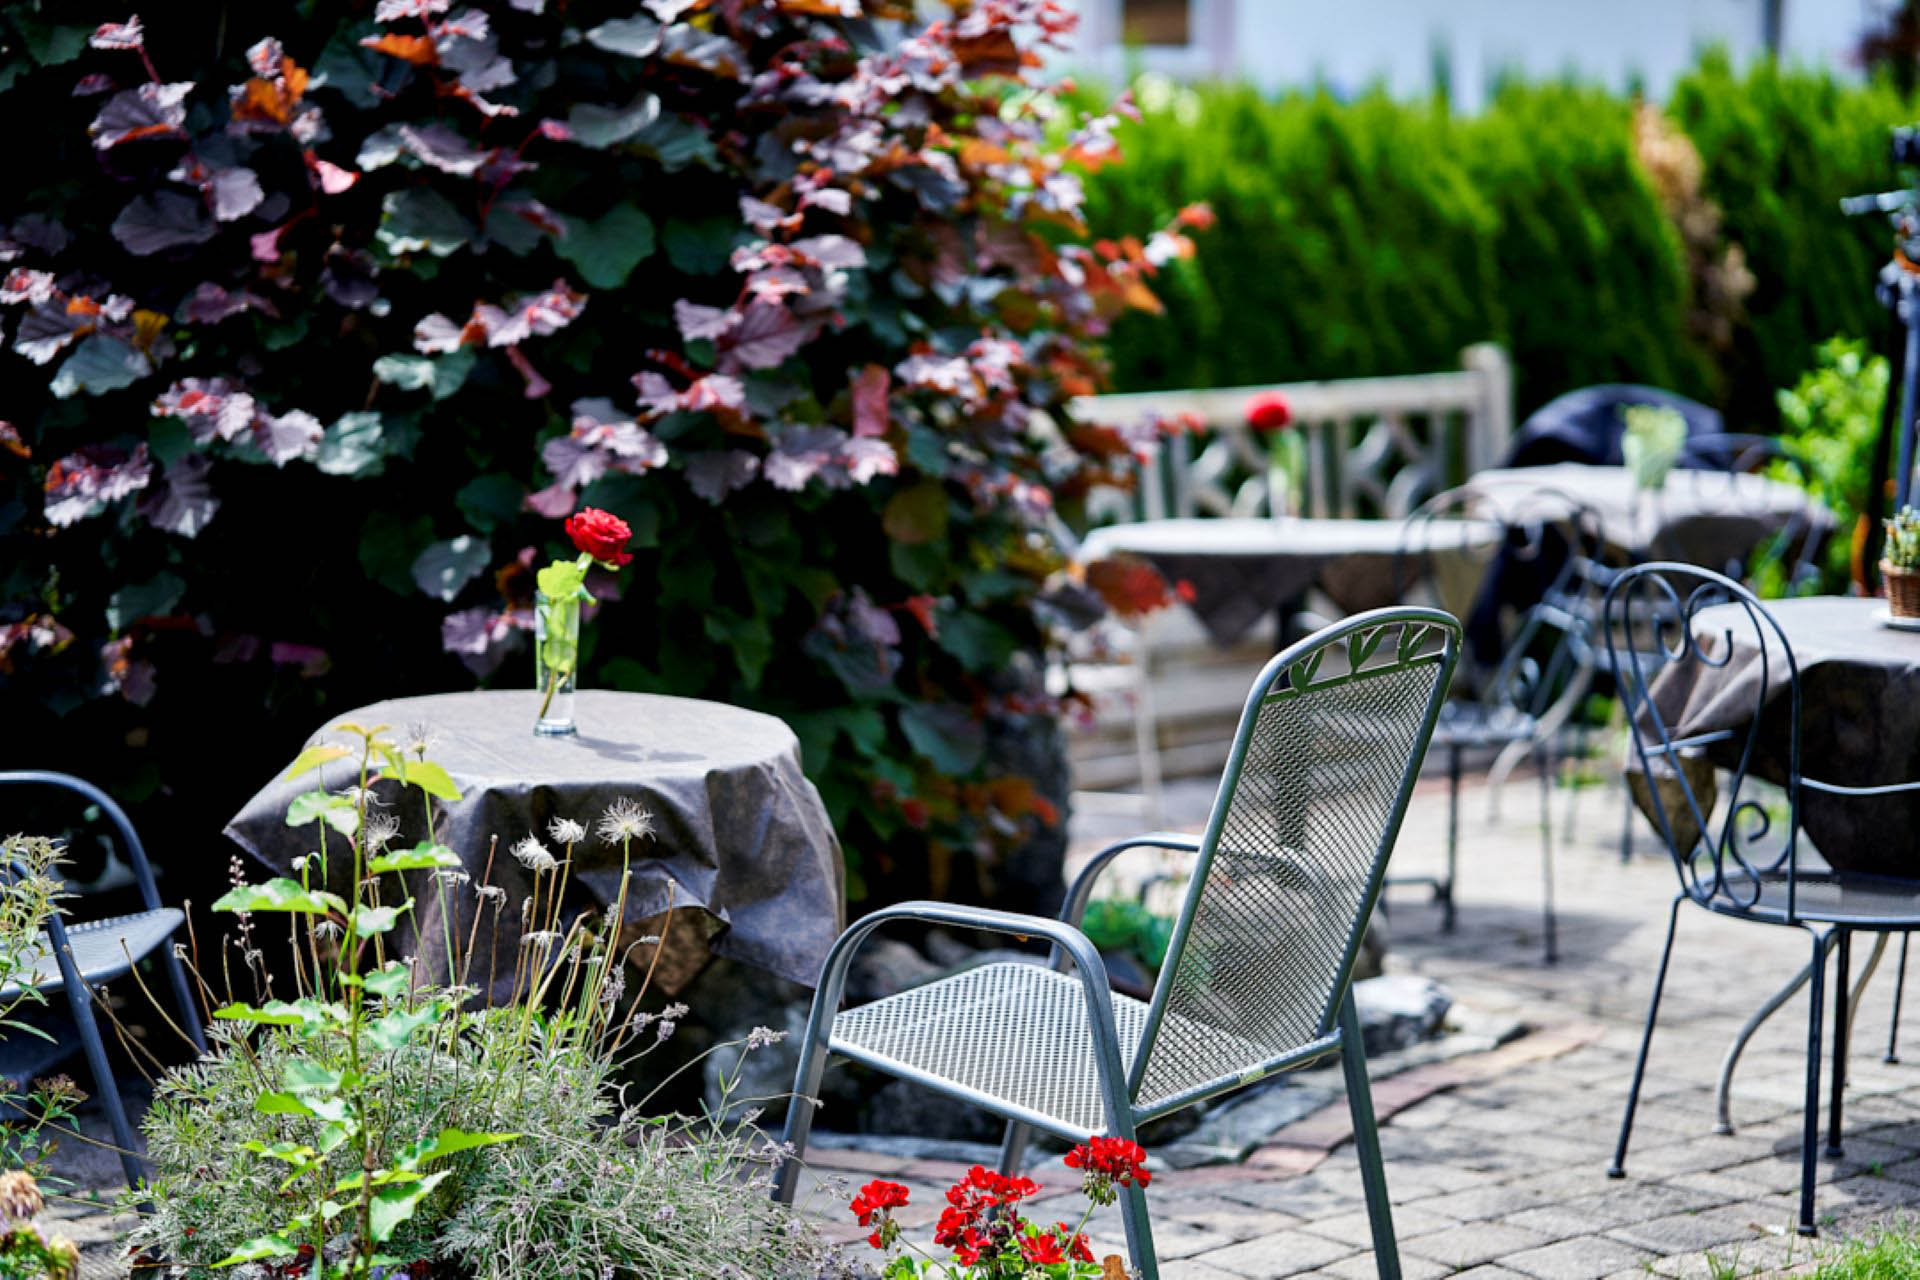 Café Kaffeesatz, Schoenau am Koenigssee, Terrasse mit Stuhl im Vordergrund